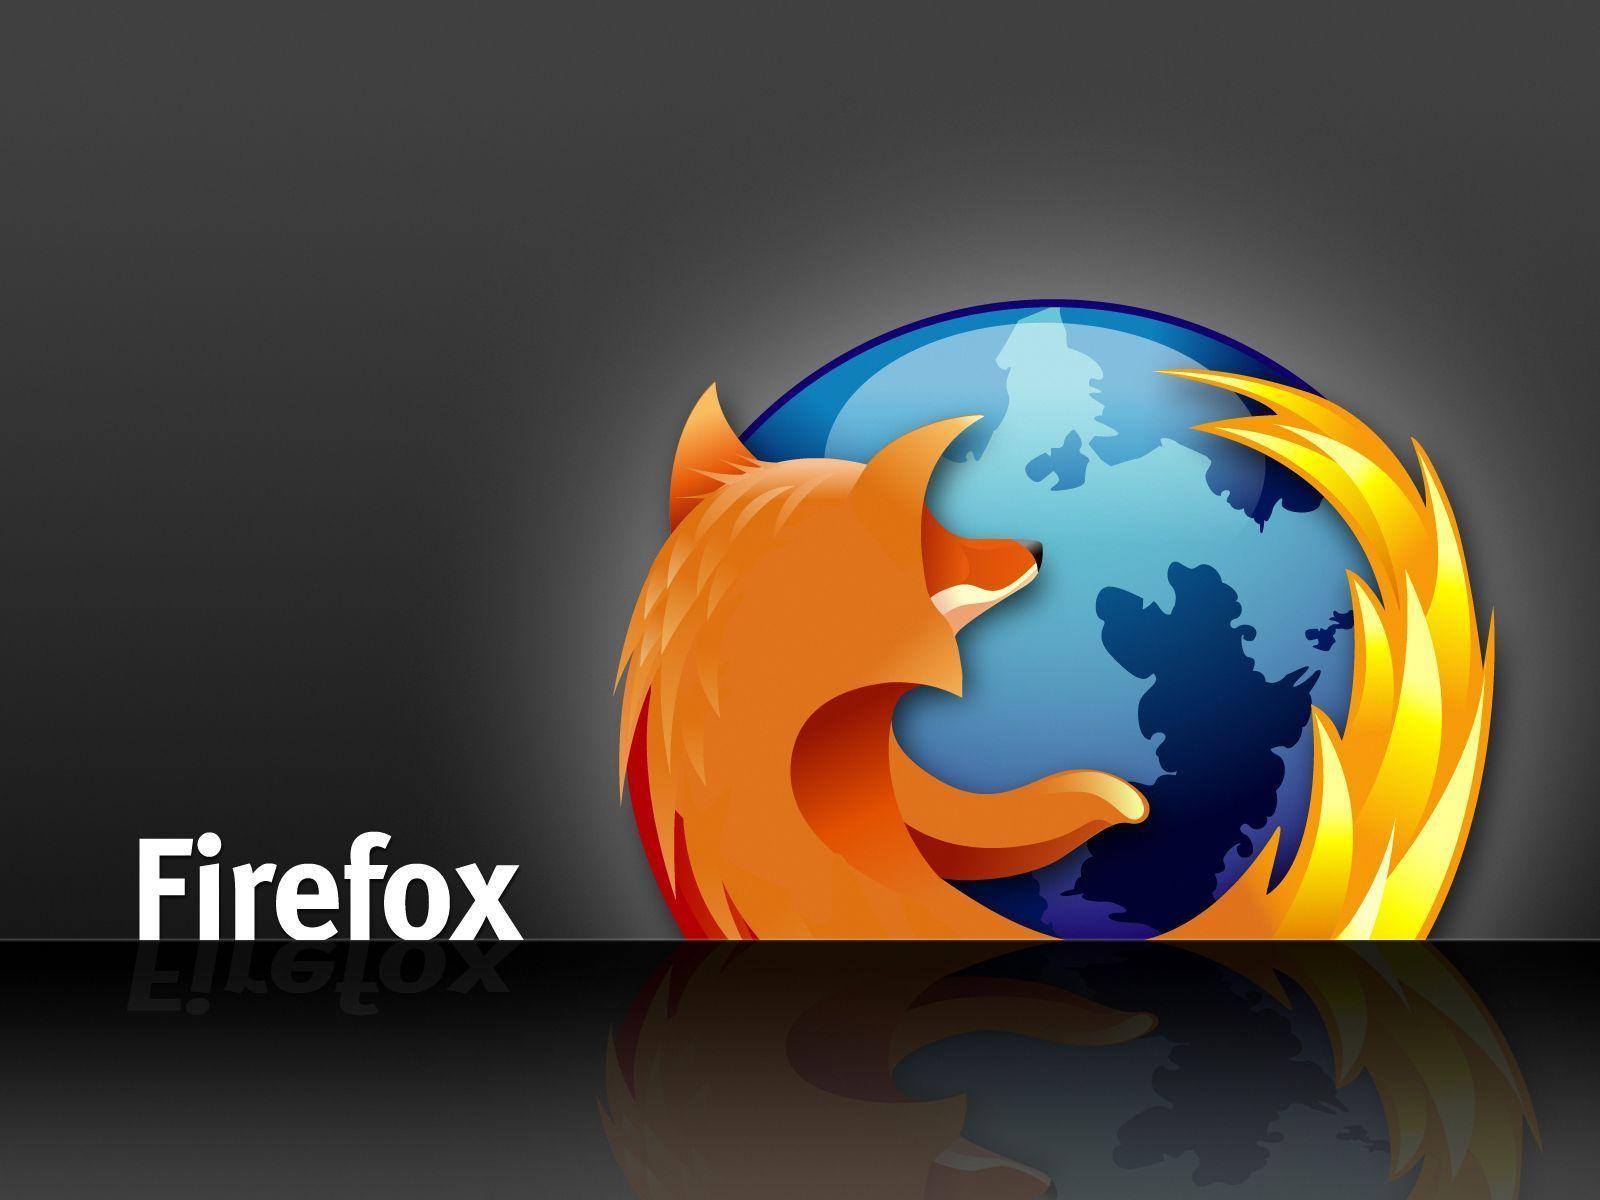 Extra Firefox Wallpaper